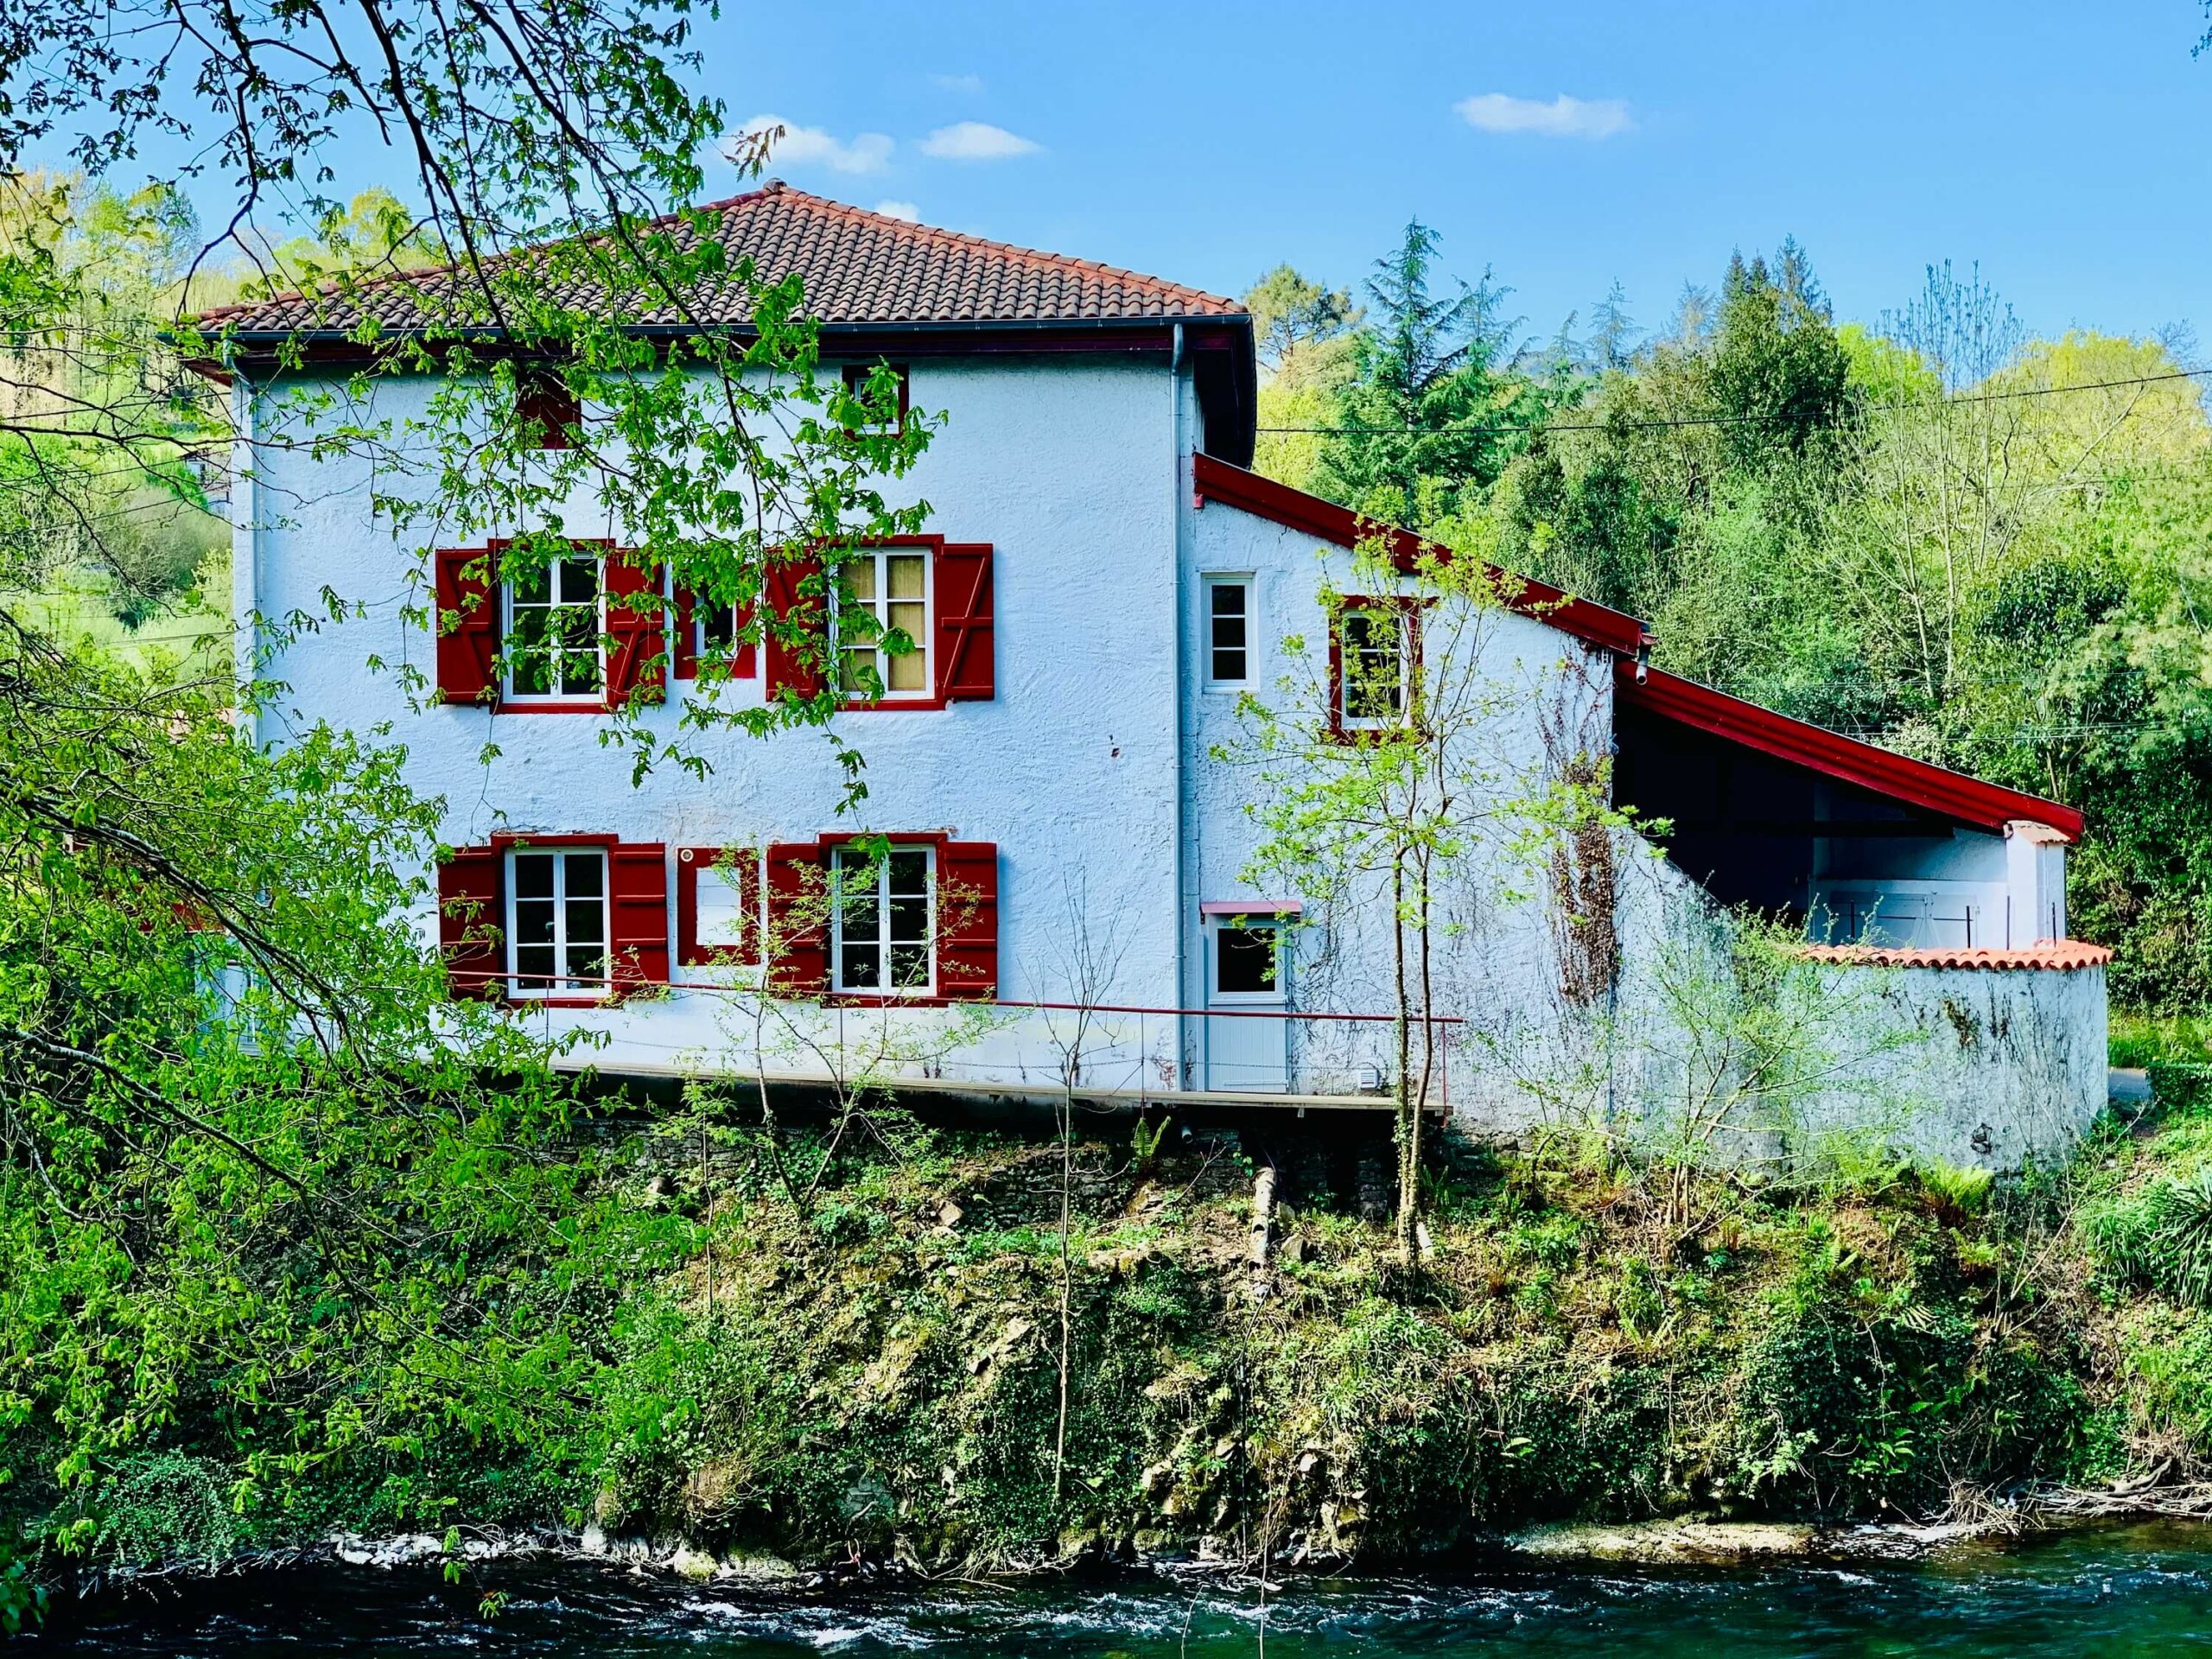 Maison d'hpotes Donamaria à Saint-Jean-Pied-de-Port (64) Pays Basque 